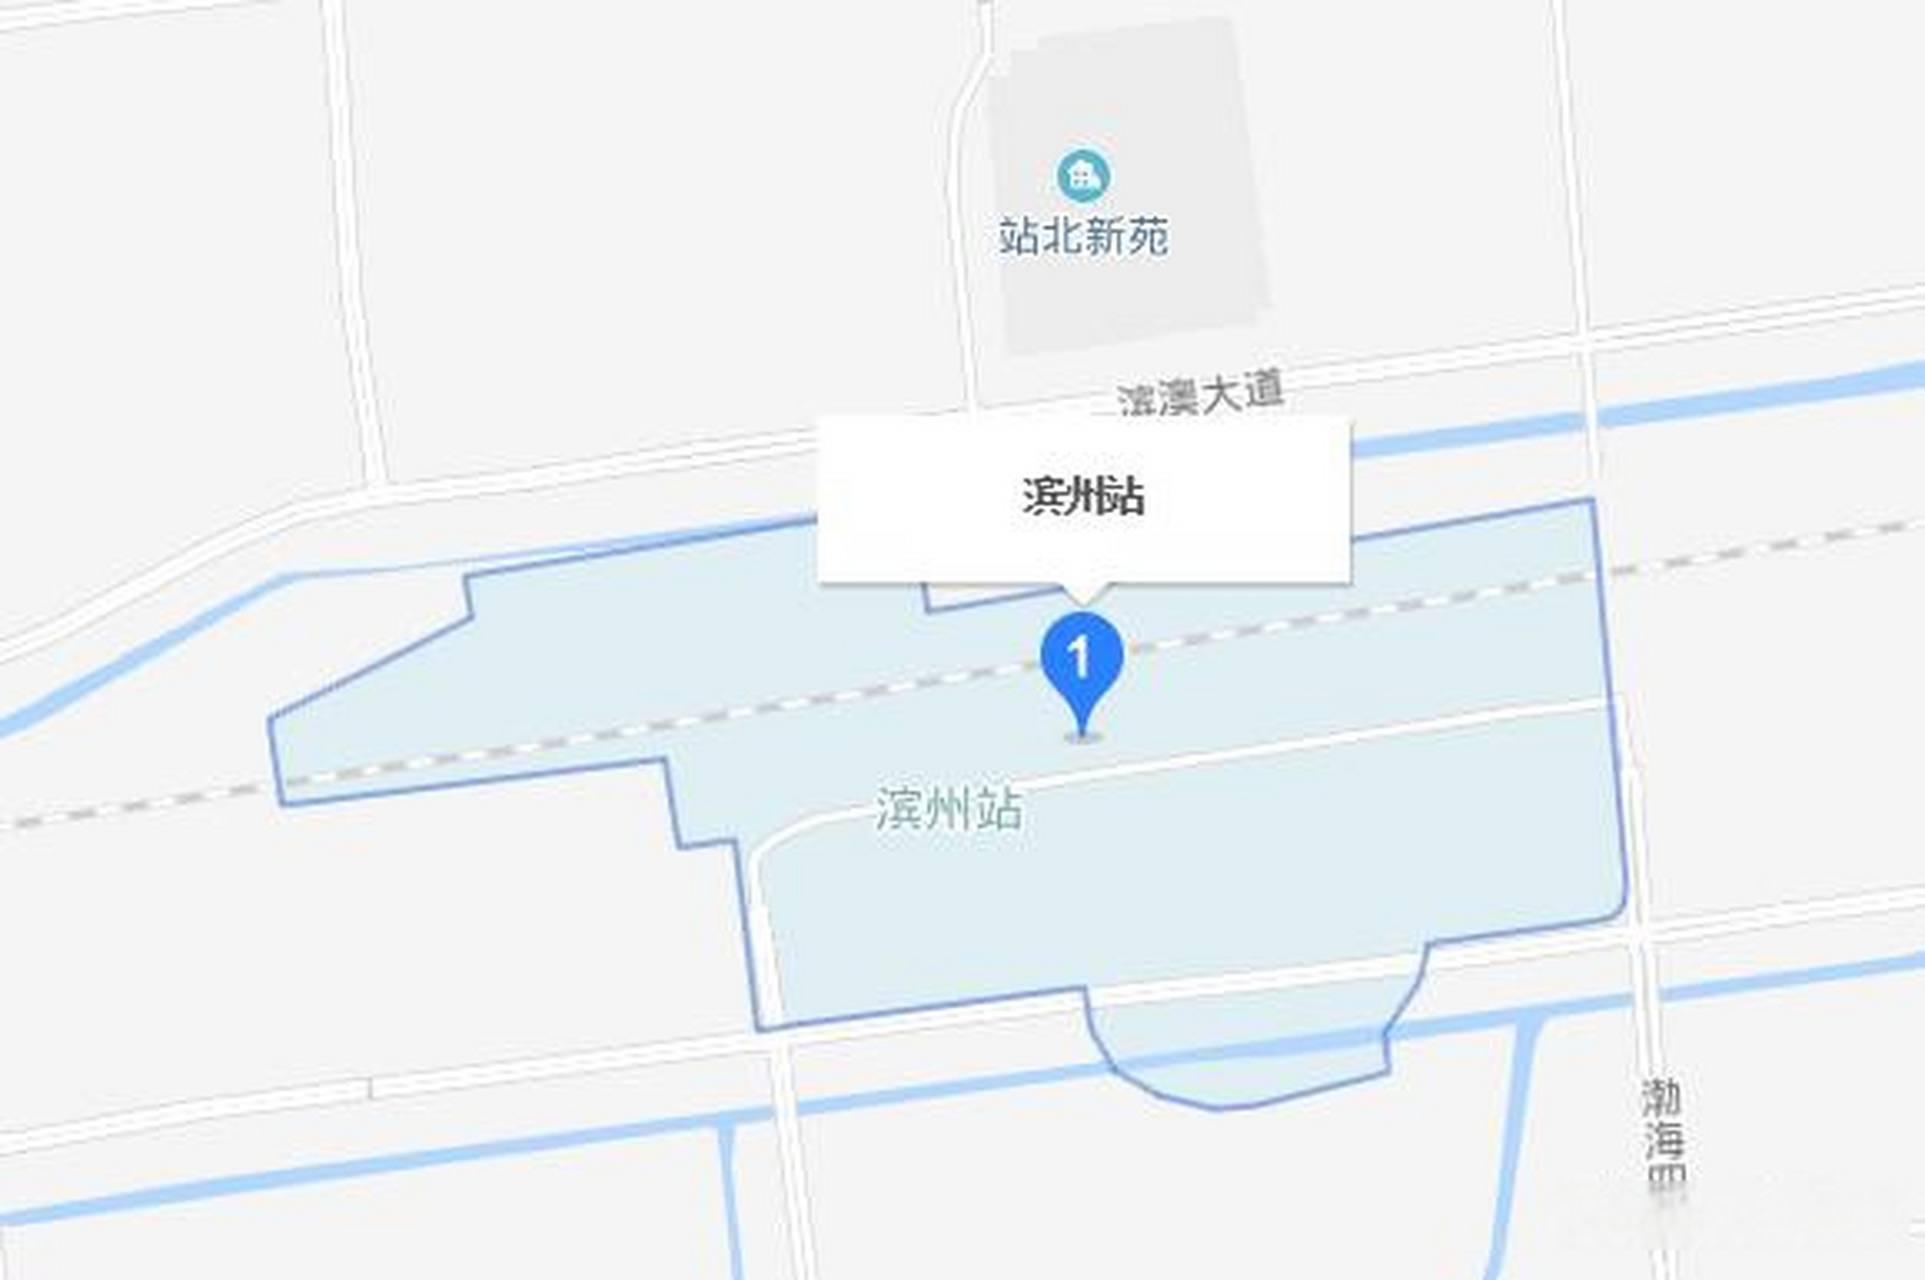 滨州站是京沪东线中间站(滨东潍铁路始发终点站)济滨城际铁路的始发